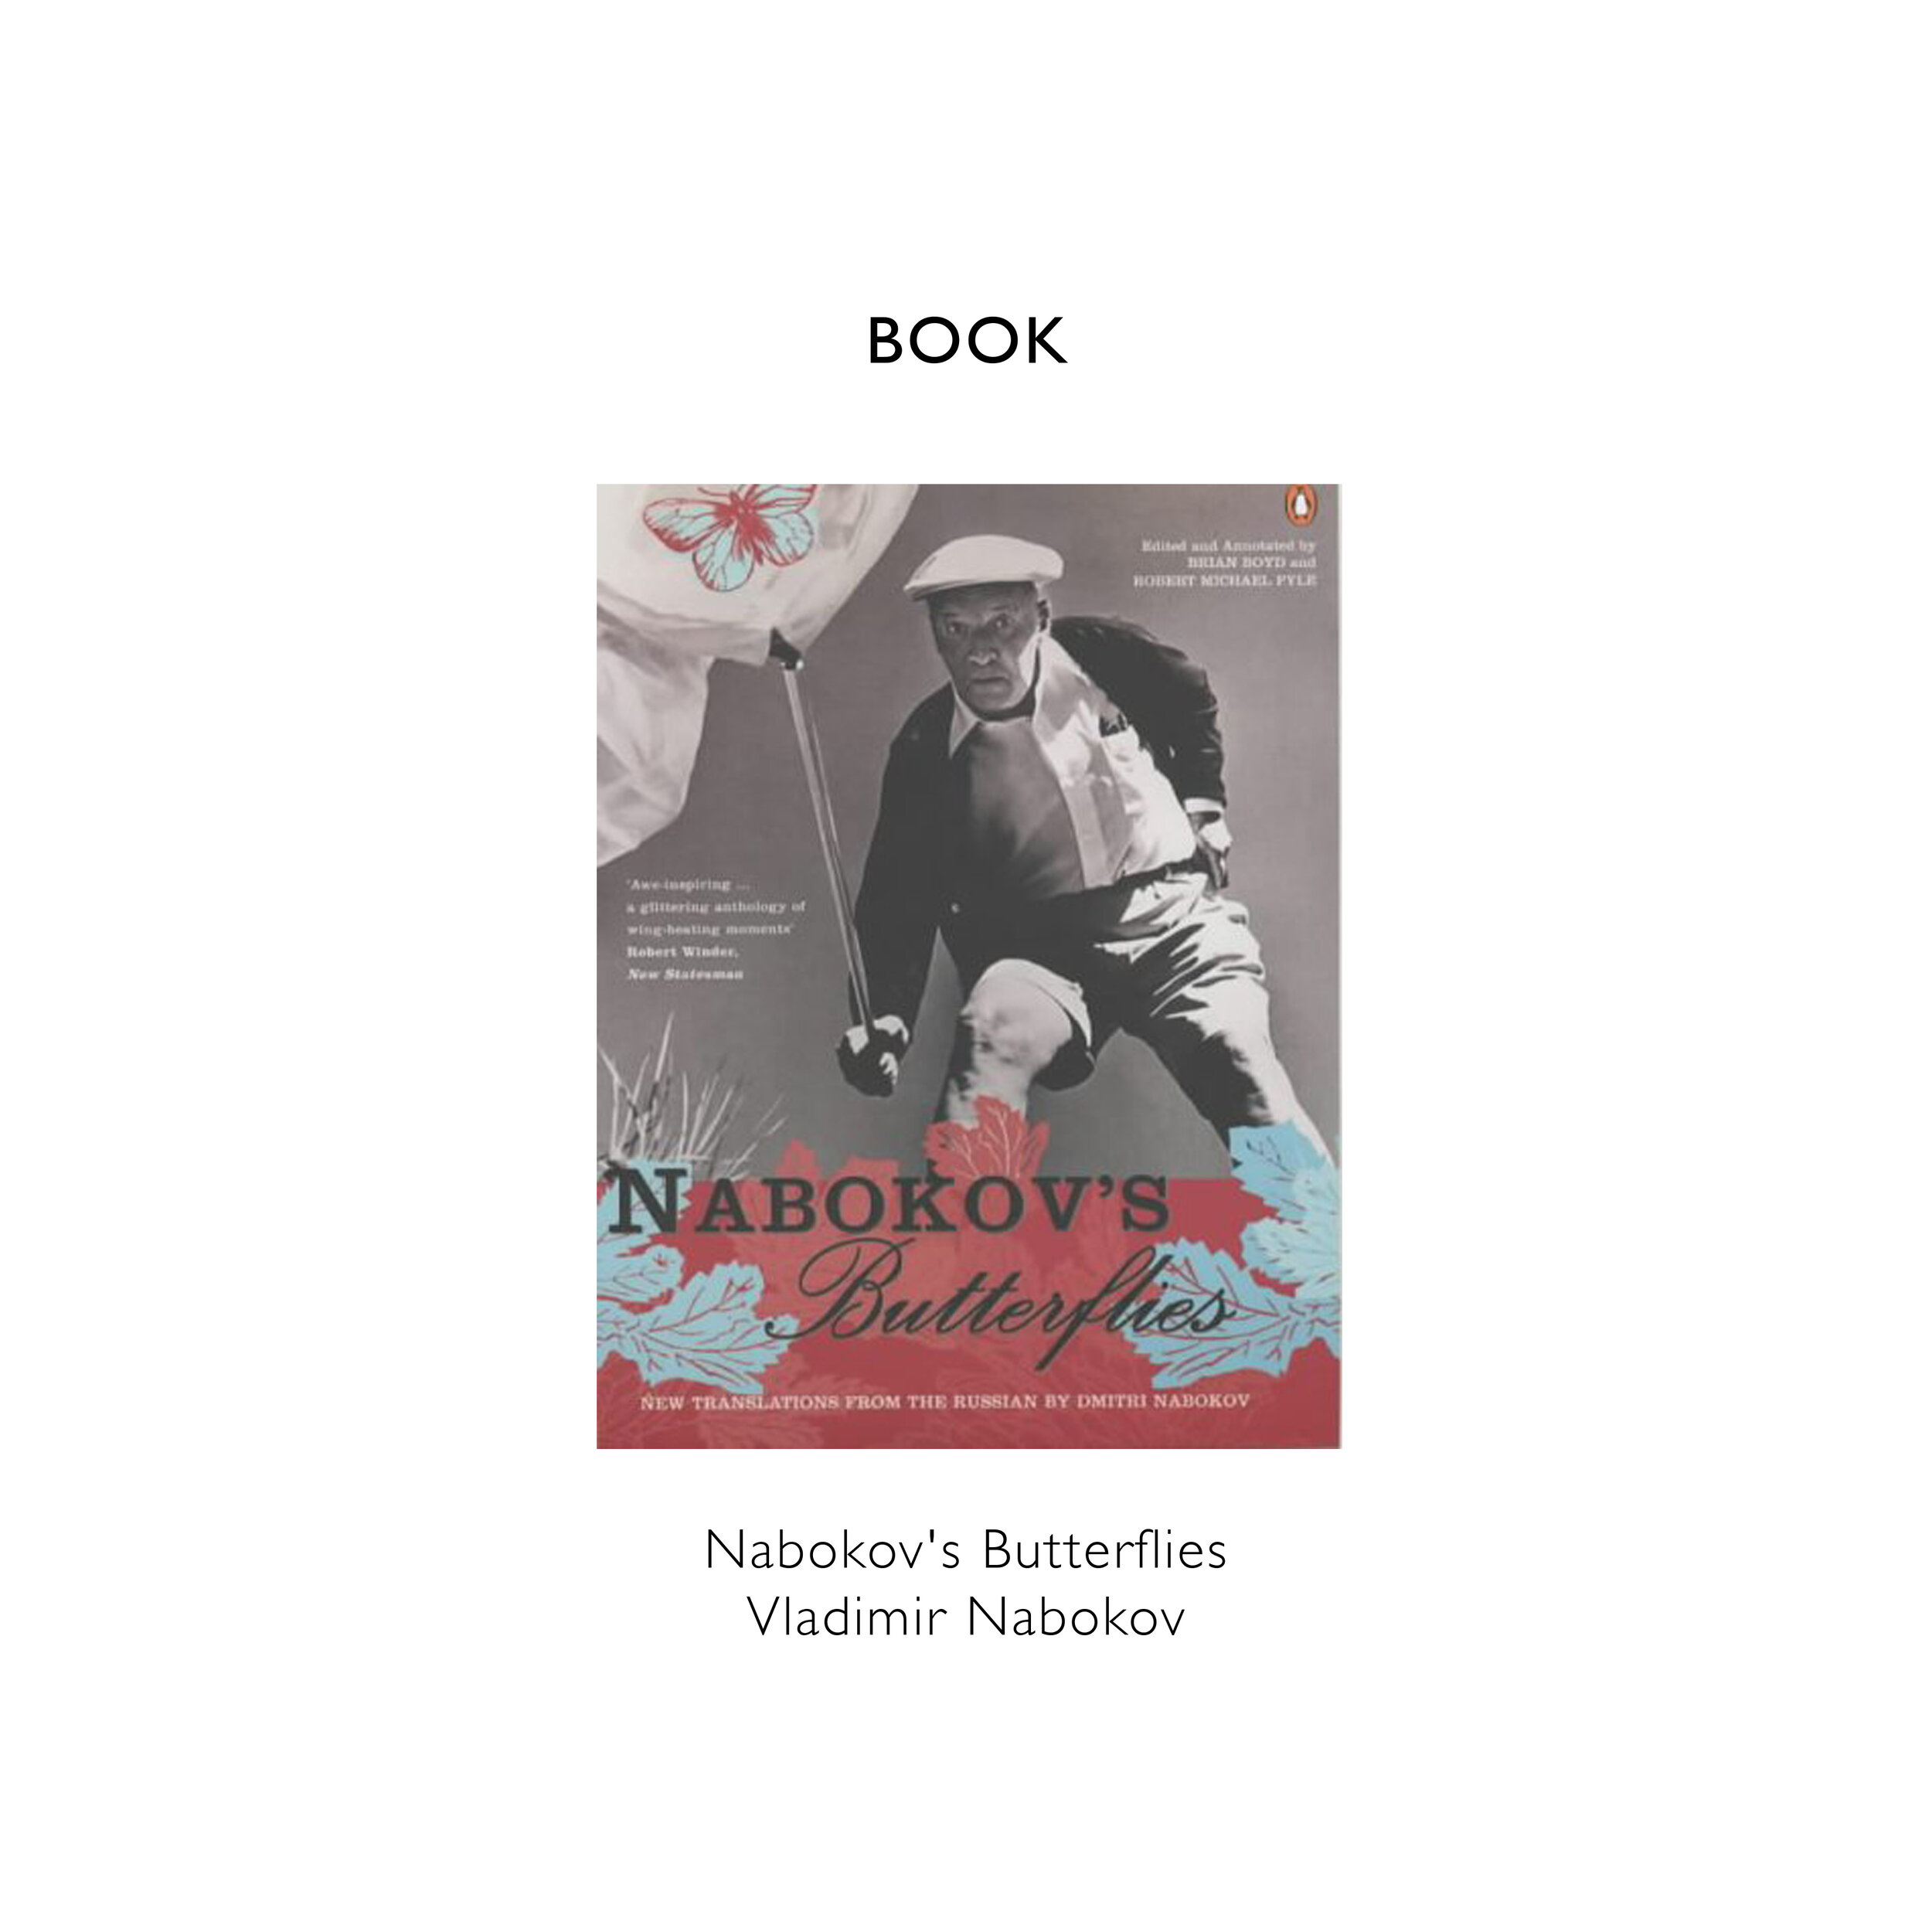 REFERENCE BLOG TEMPLATE Nabokov's Butterflies Vladimir Nabokov copy.jpg